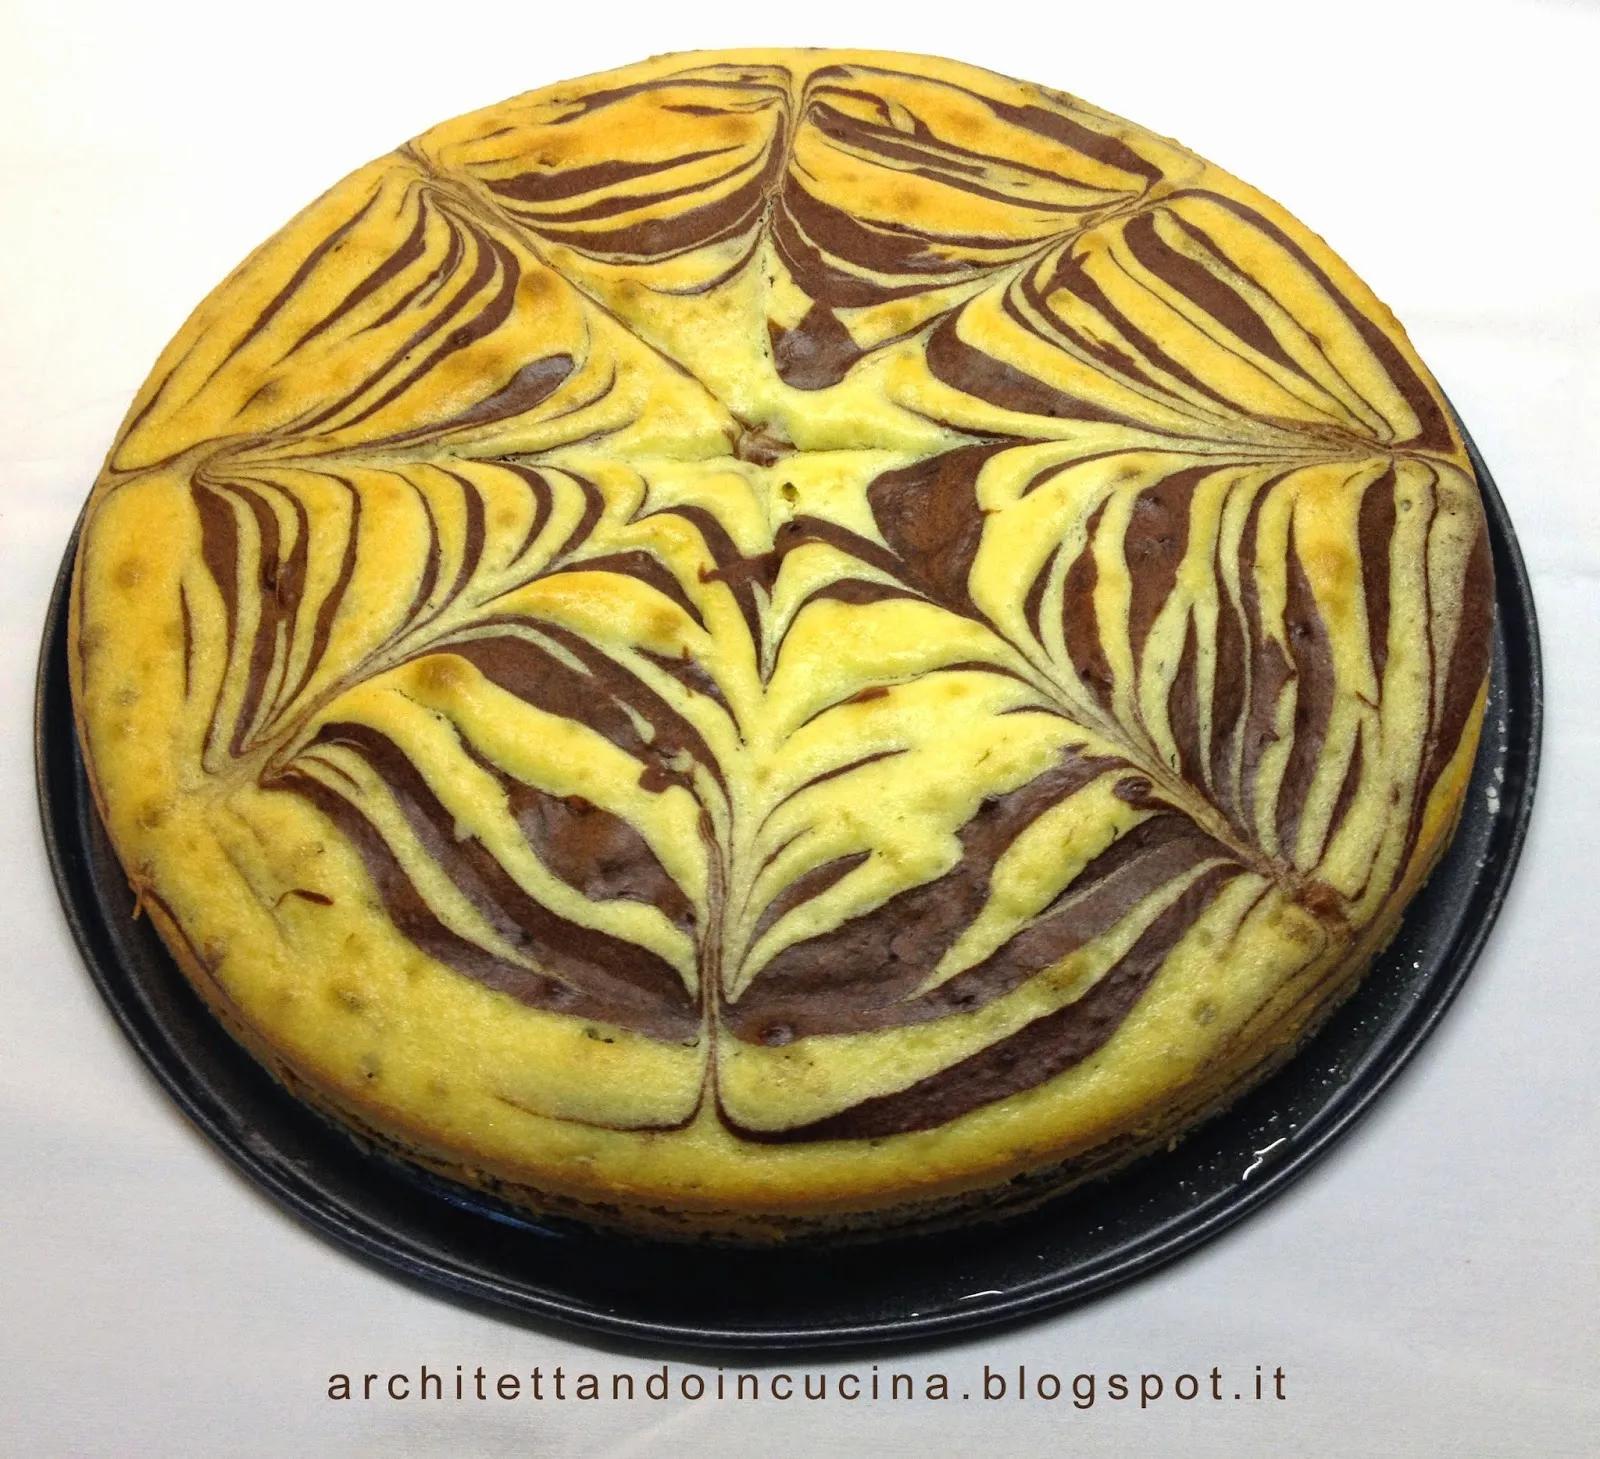 Zebra cake storia - Ricette di Cotto e Postato